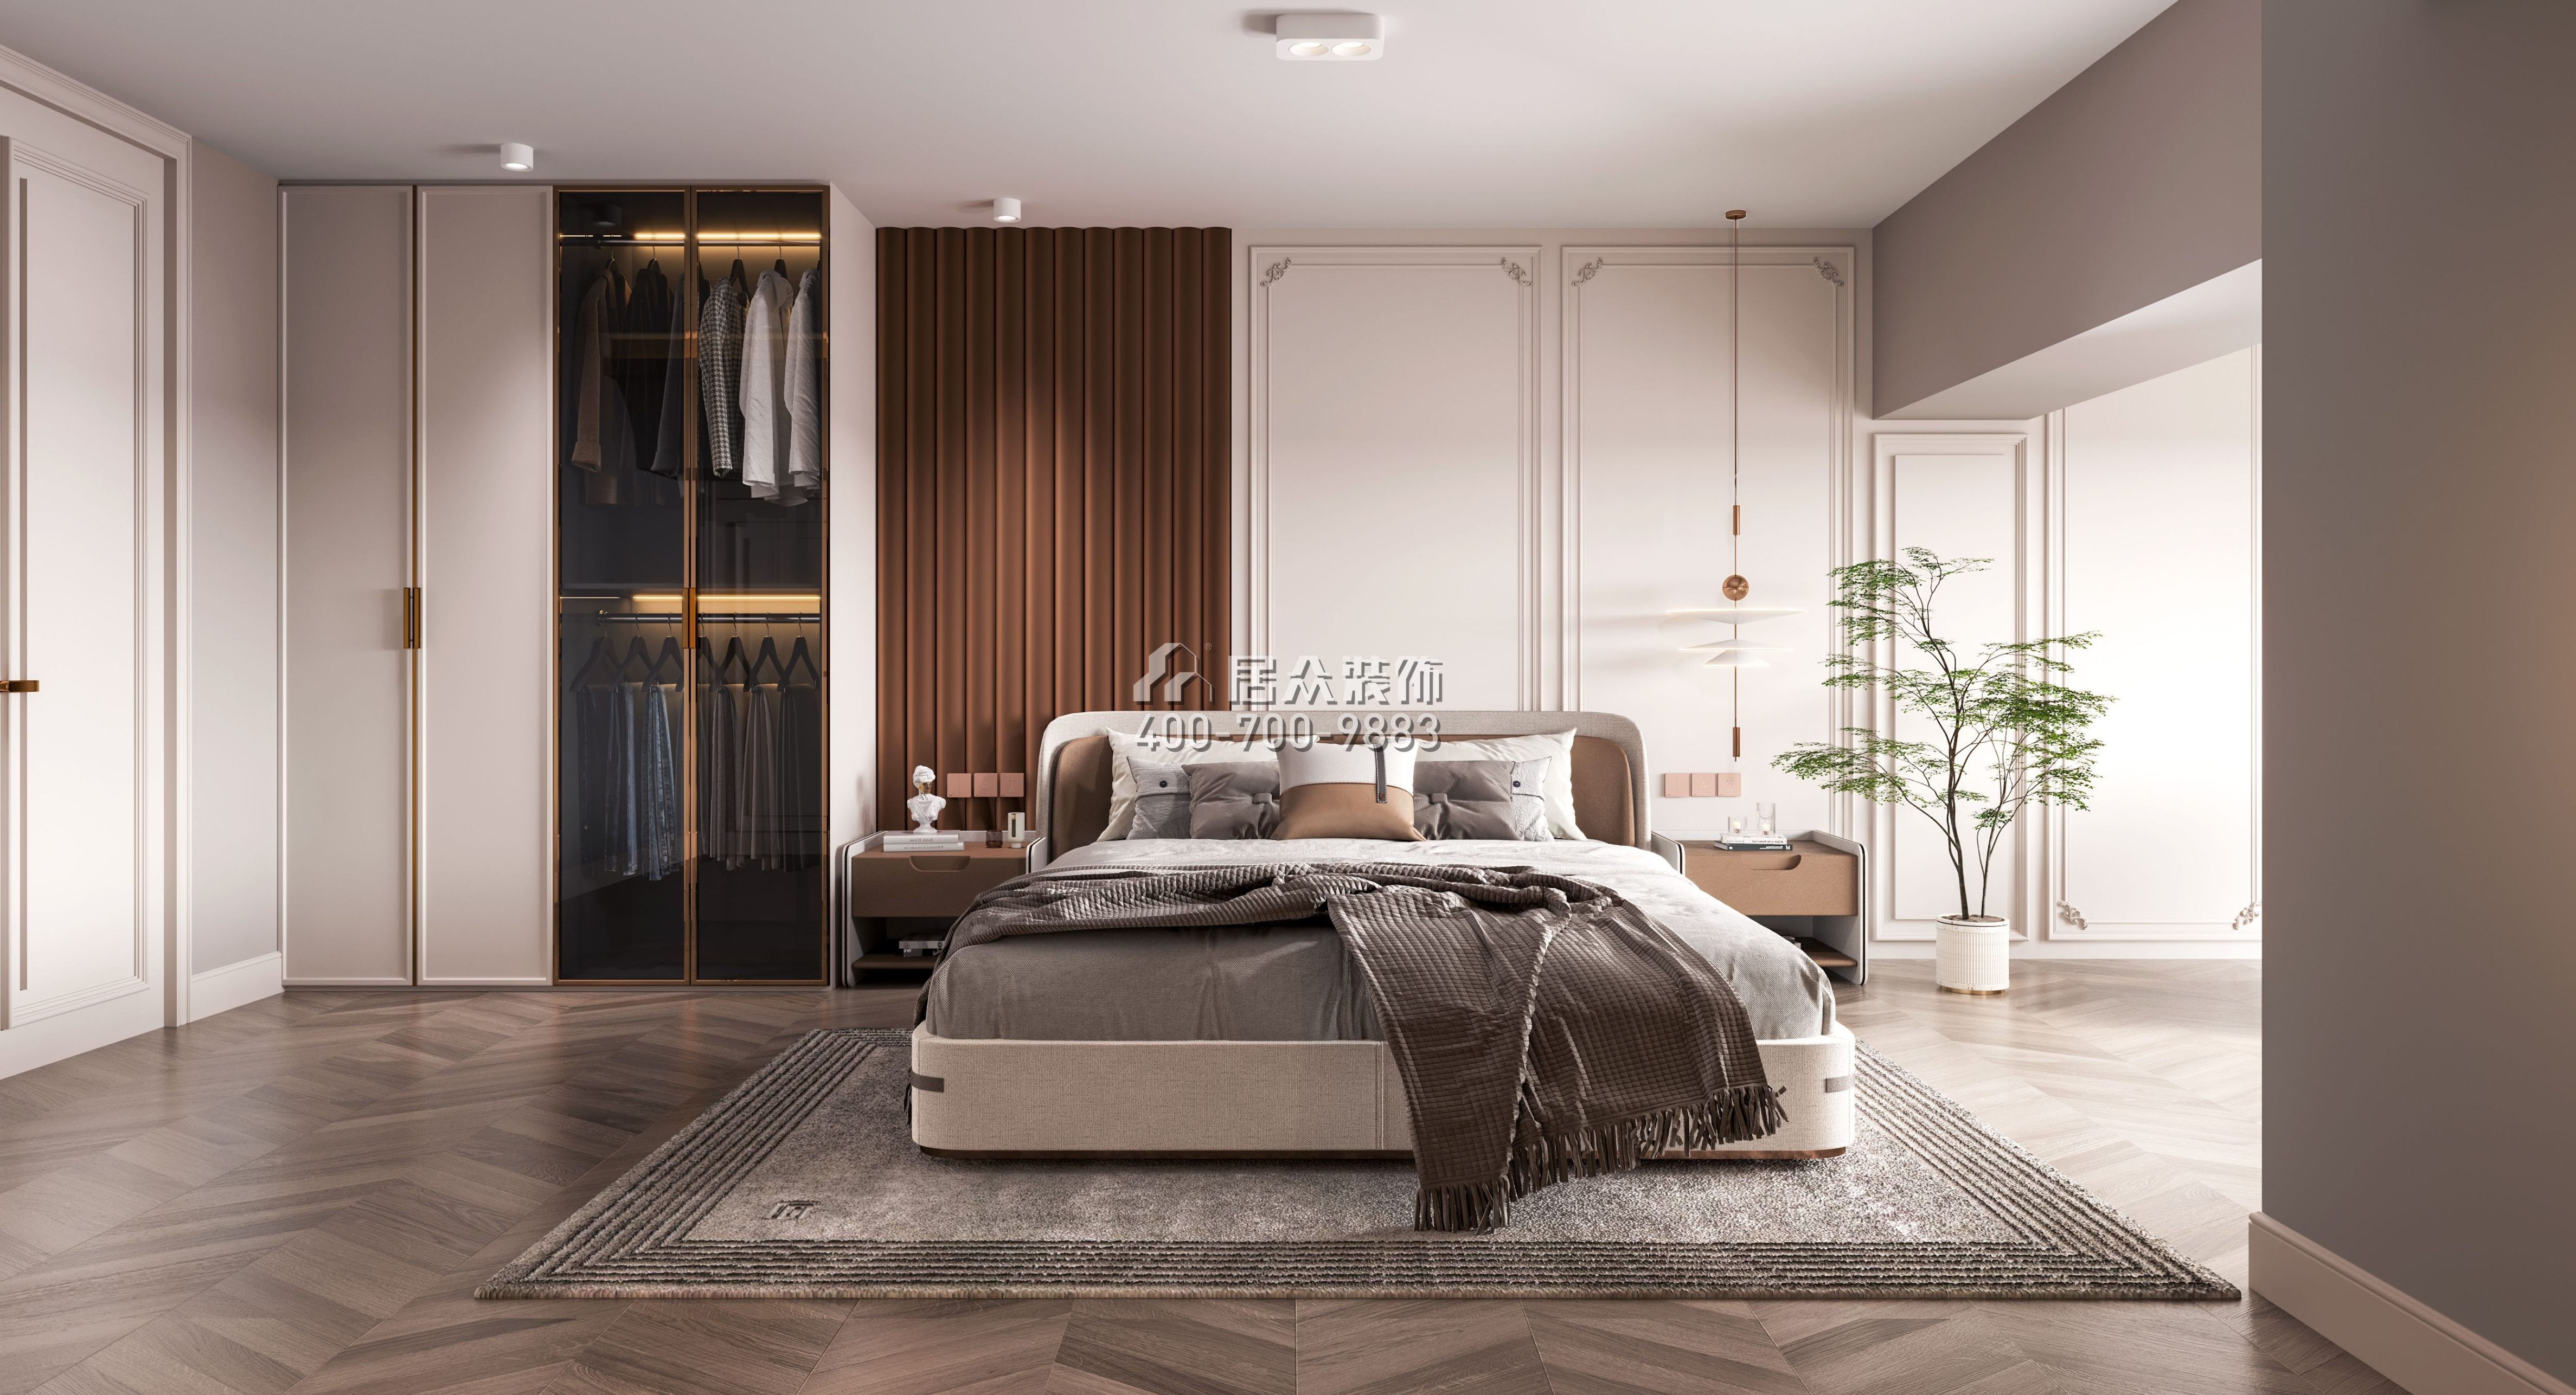 中葡商贸广场200平方米欧式风格复式户型卧室装修效果图